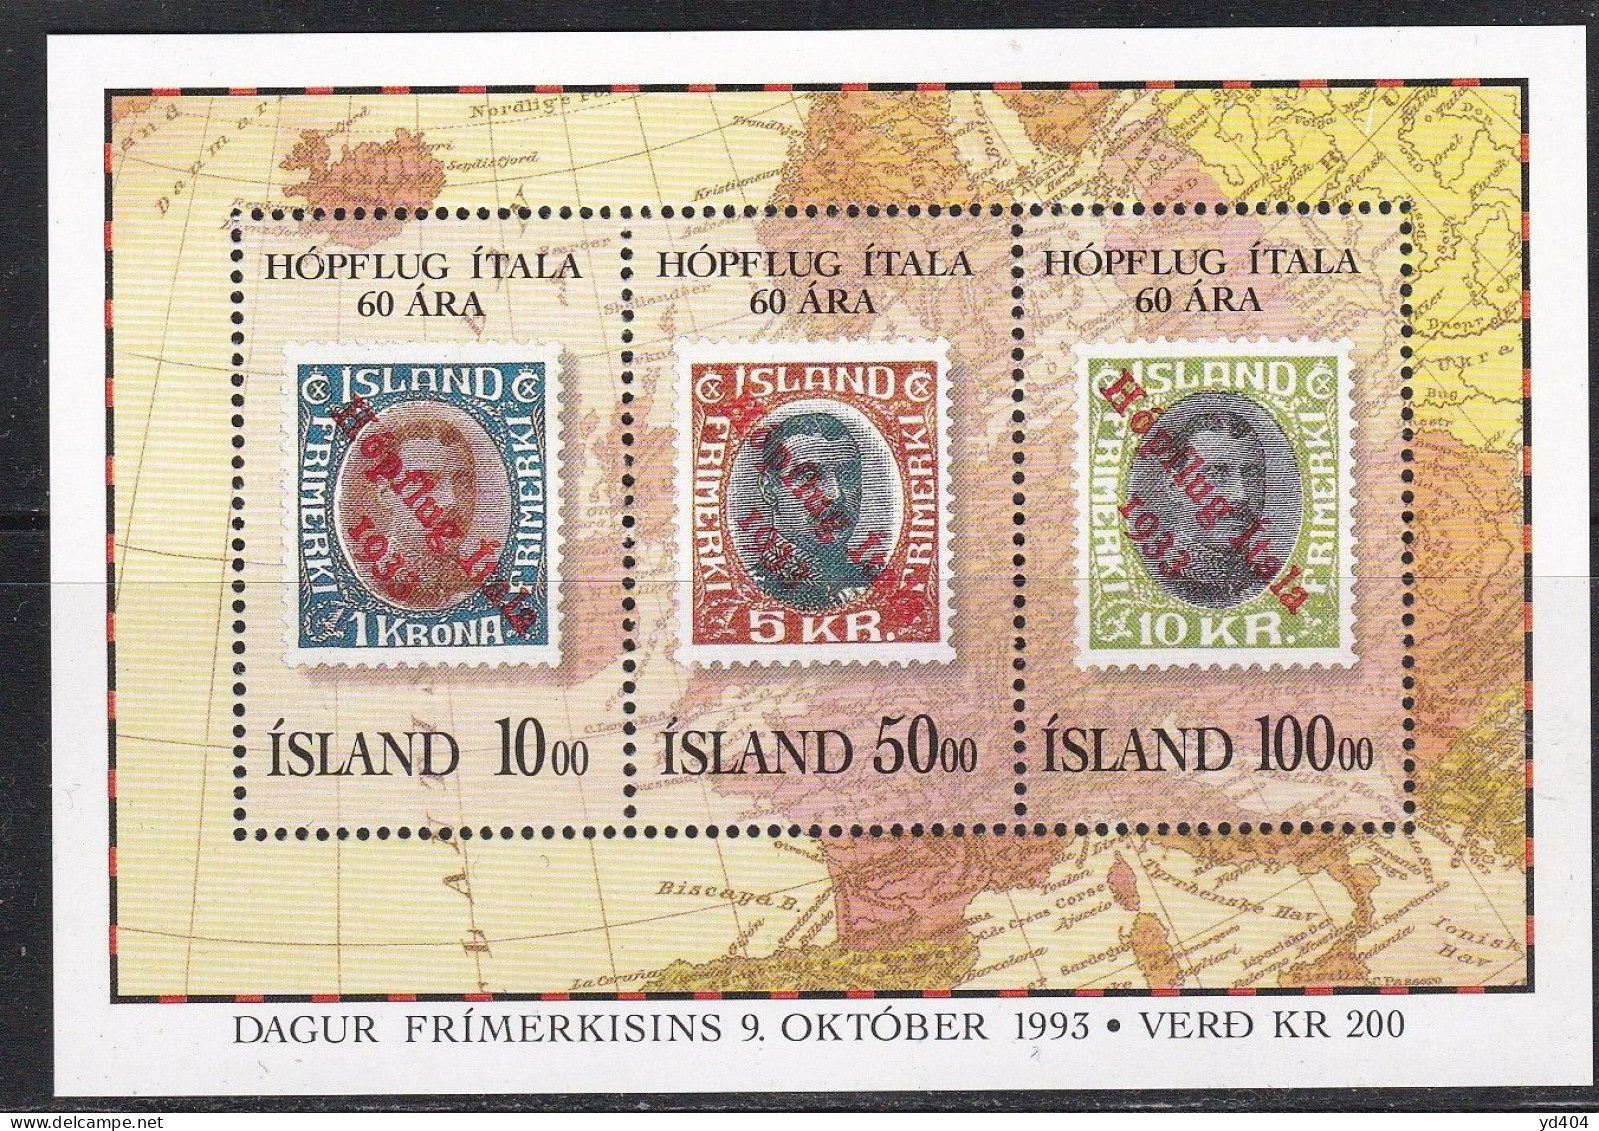 IS482 – ISLANDE – ICELAND – 1993 – JOURNEE DU TIMBRE – SG # MS 810 MNH 12,25 € - Blokken & Velletjes